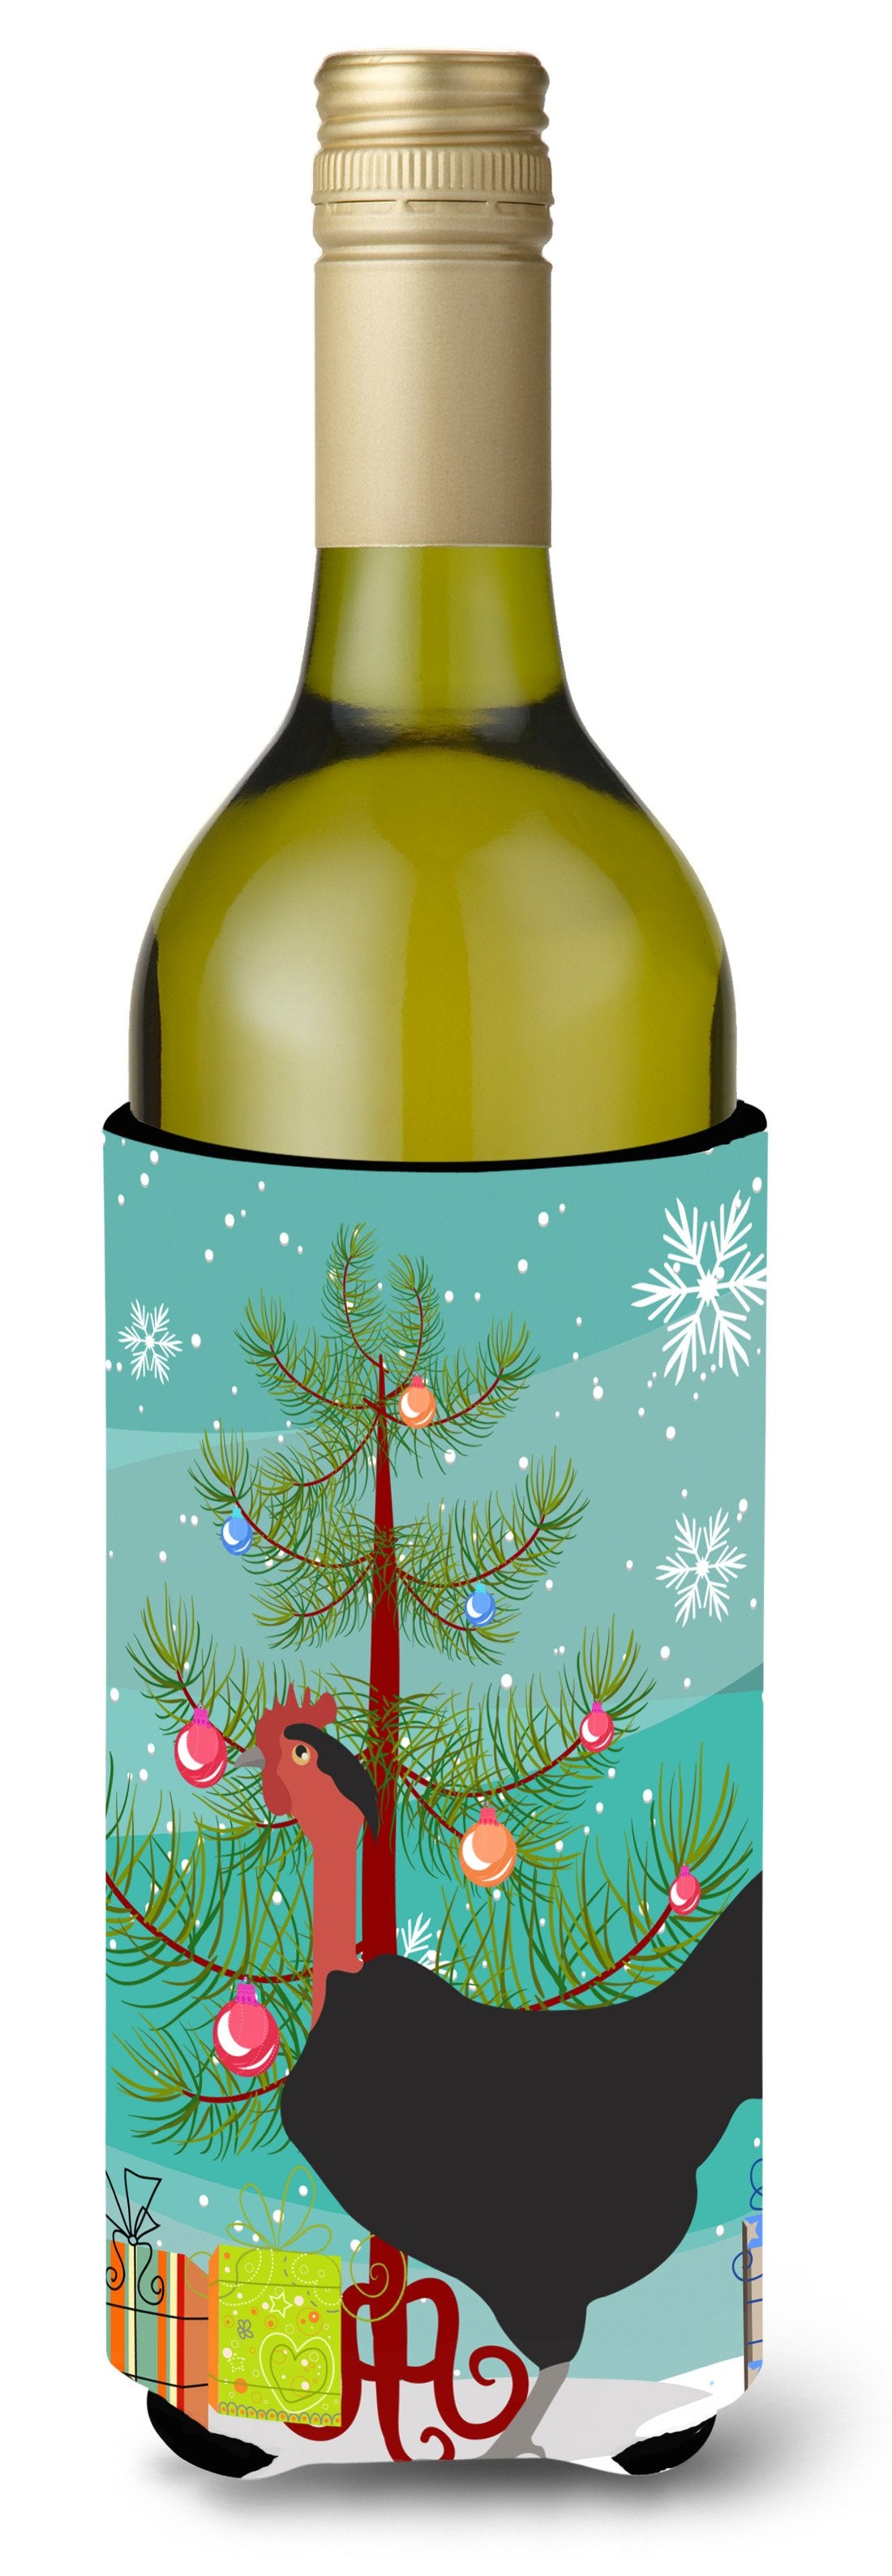 Naked Neck Chicken Christmas Wine Bottle Beverge Insulator Hugger BB9206LITERK by Caroline's Treasures